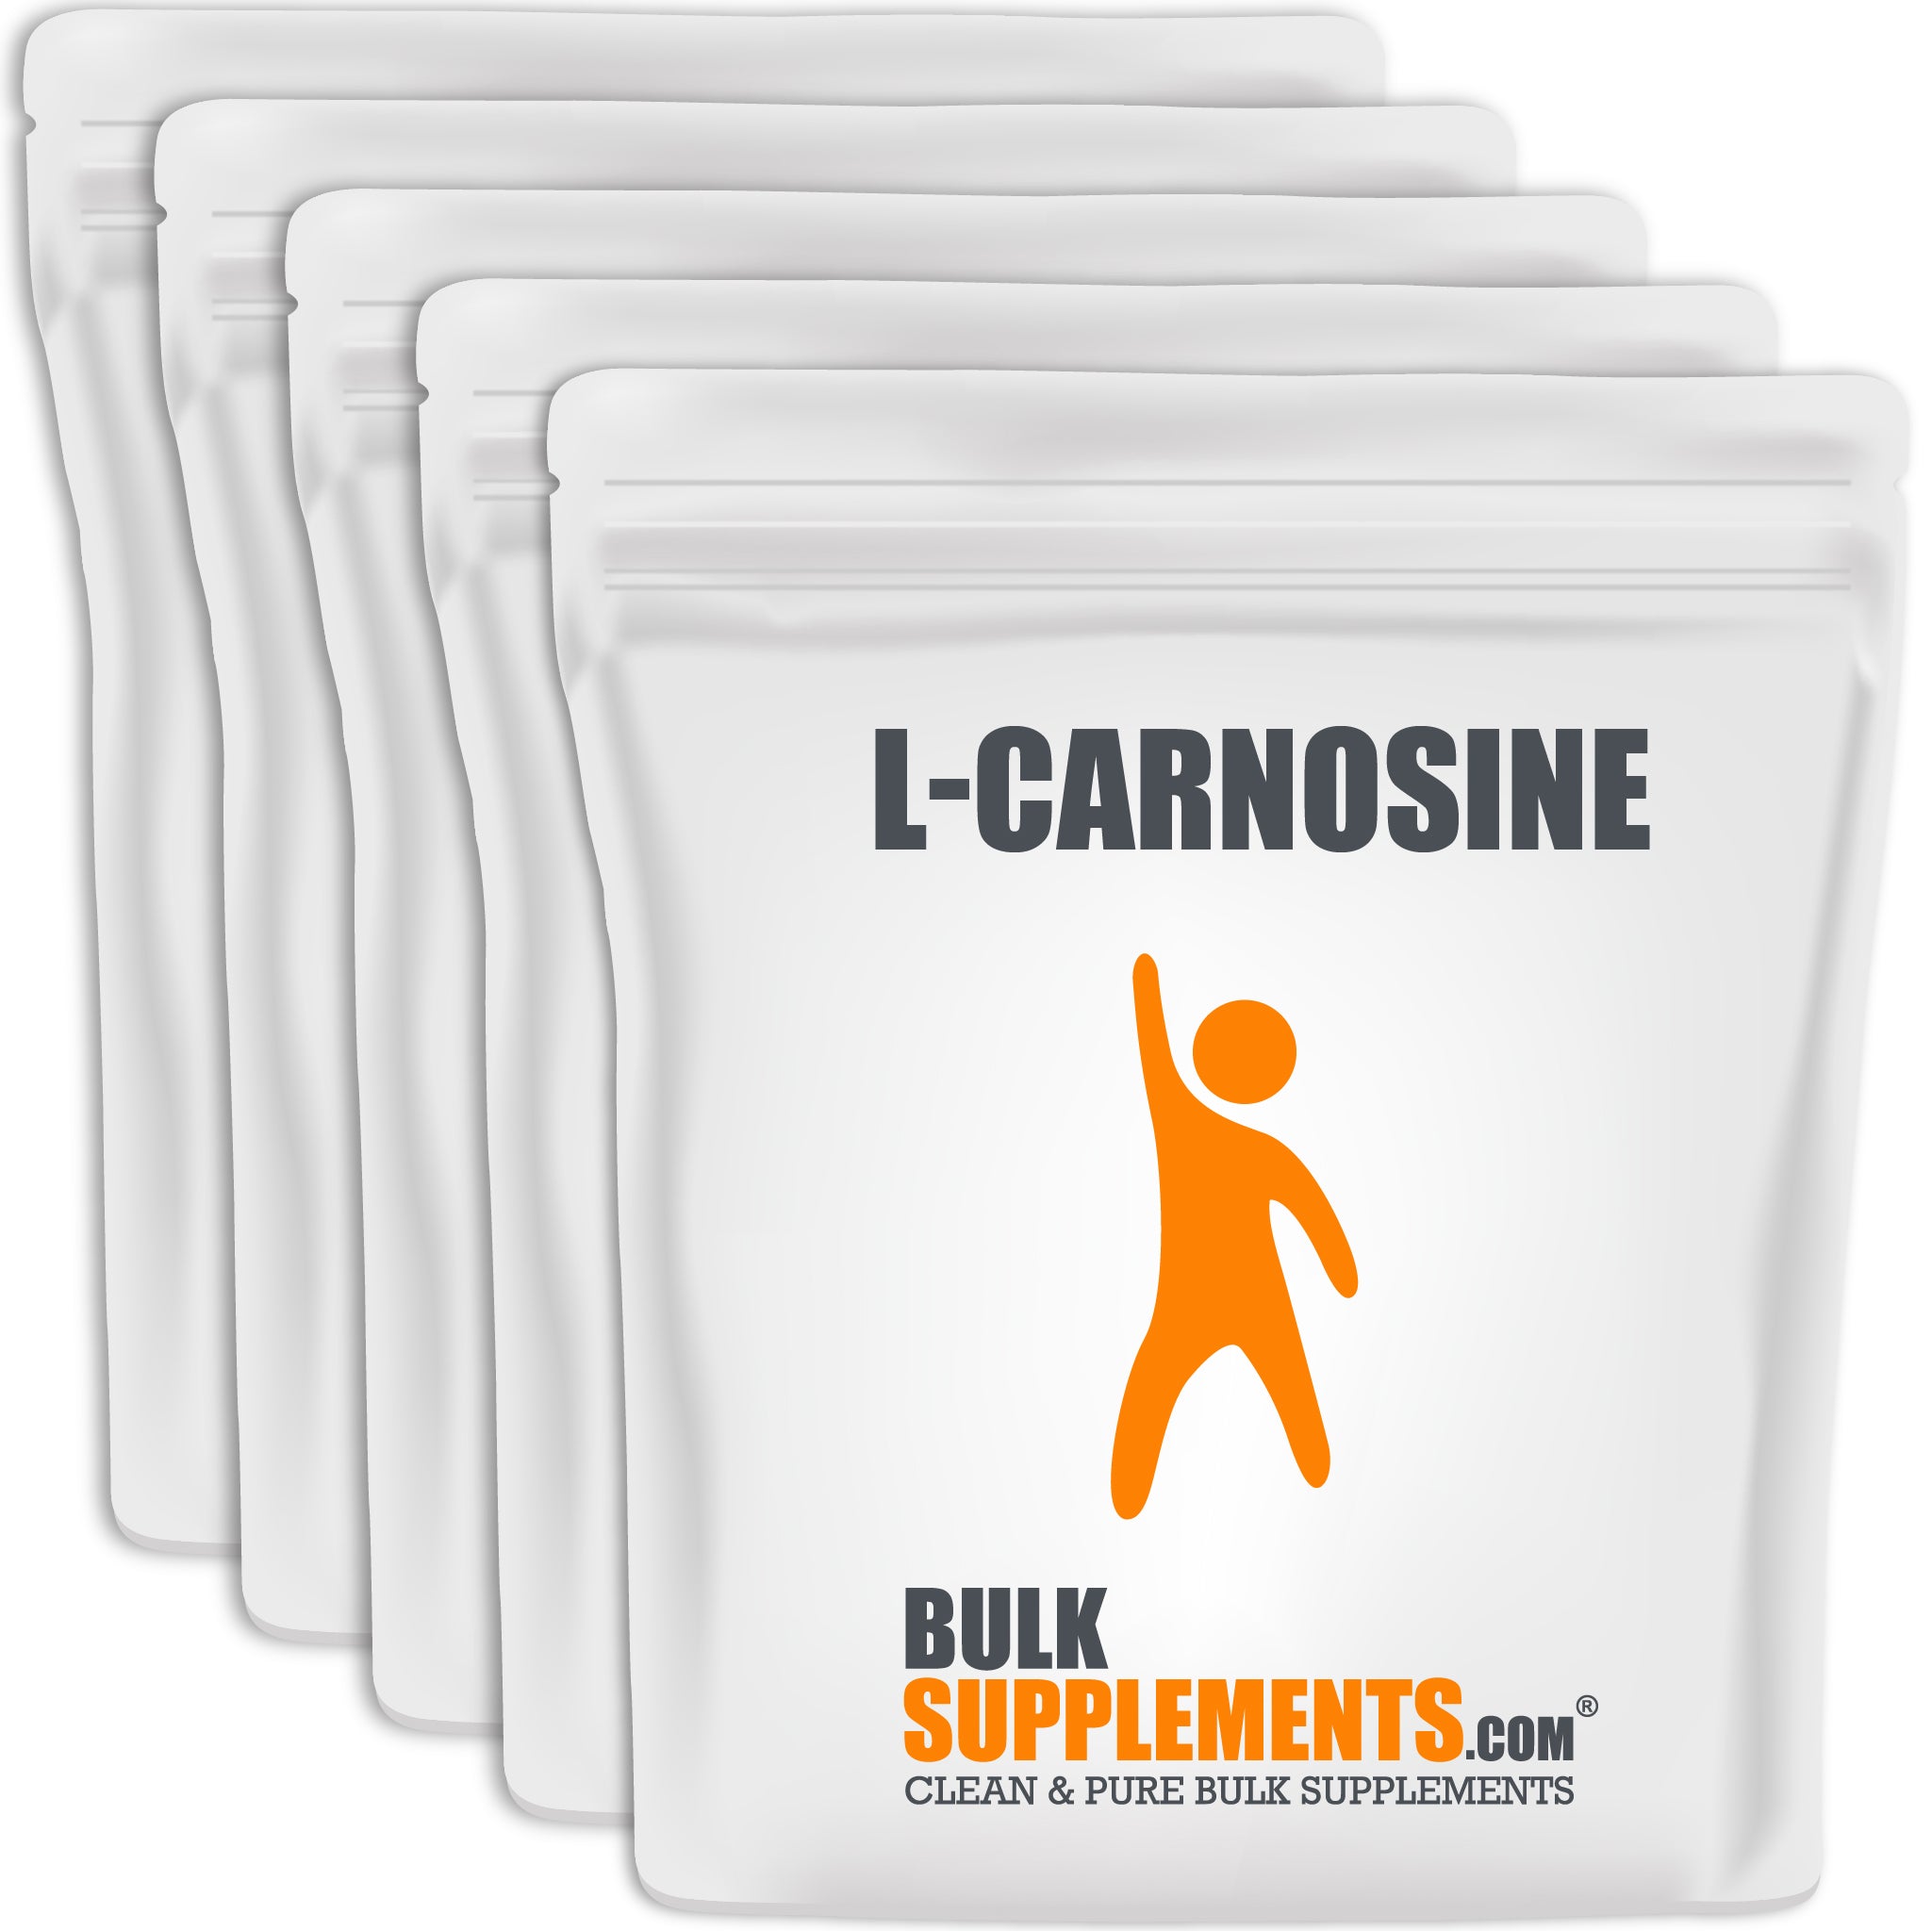 L-Carnosine 5kg bags